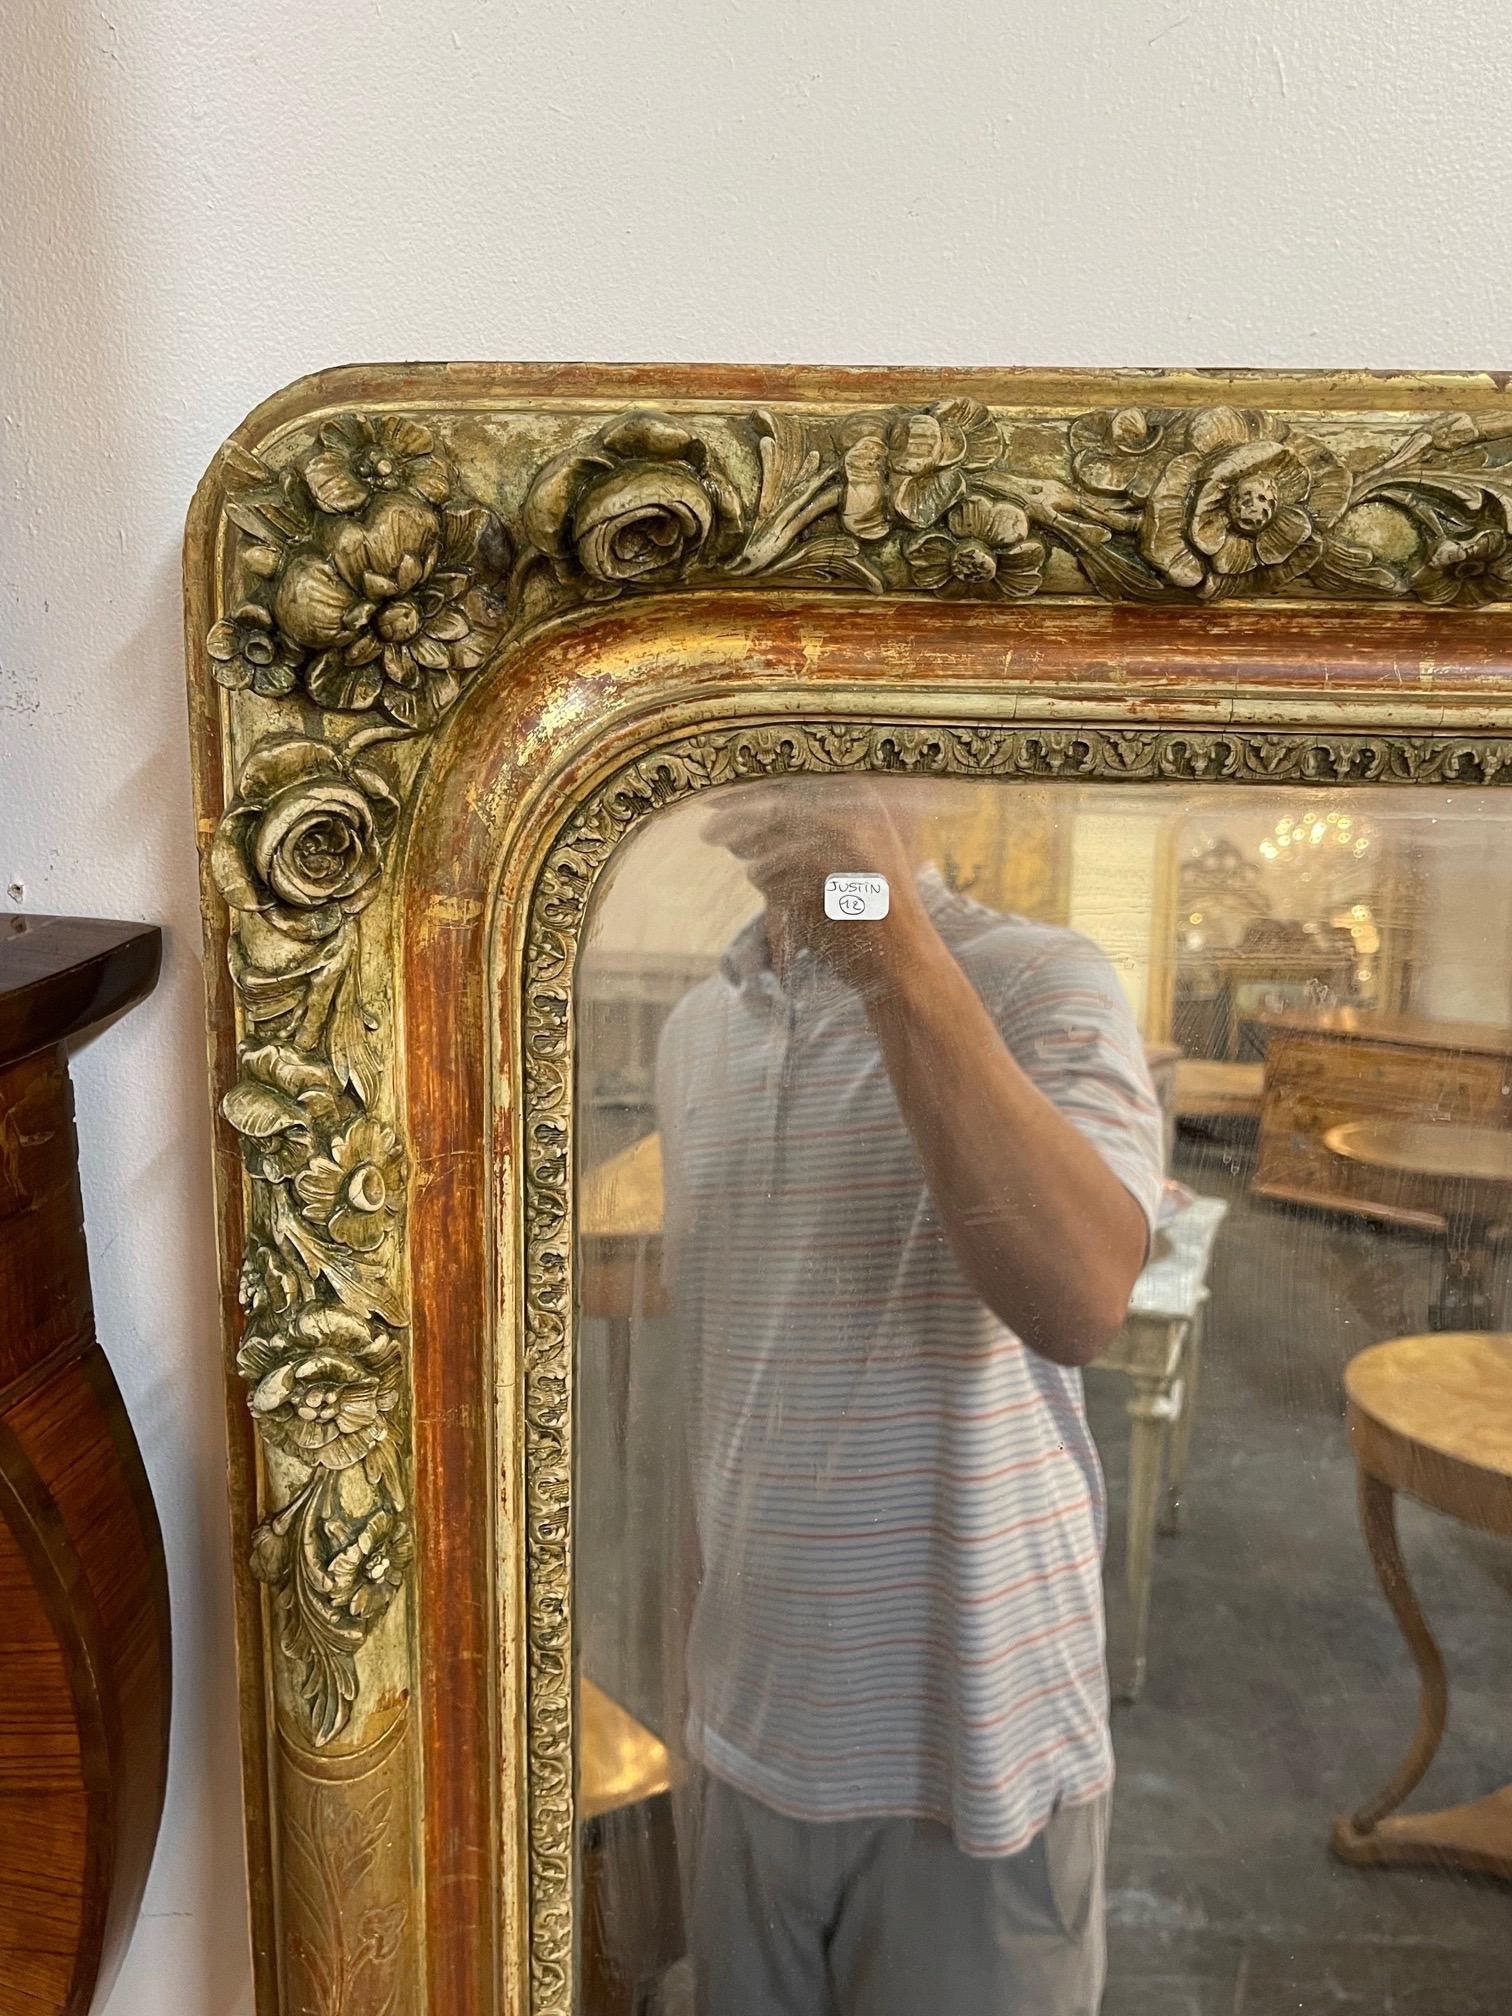 Magnifique miroir en bois doré Louis Philippe à grande échelle du 19ème siècle français avec des fleurs. Joliment sculpté et jolie patine également. Le miroir a une légère teinte rougeâtre par endroits. Si jolie !